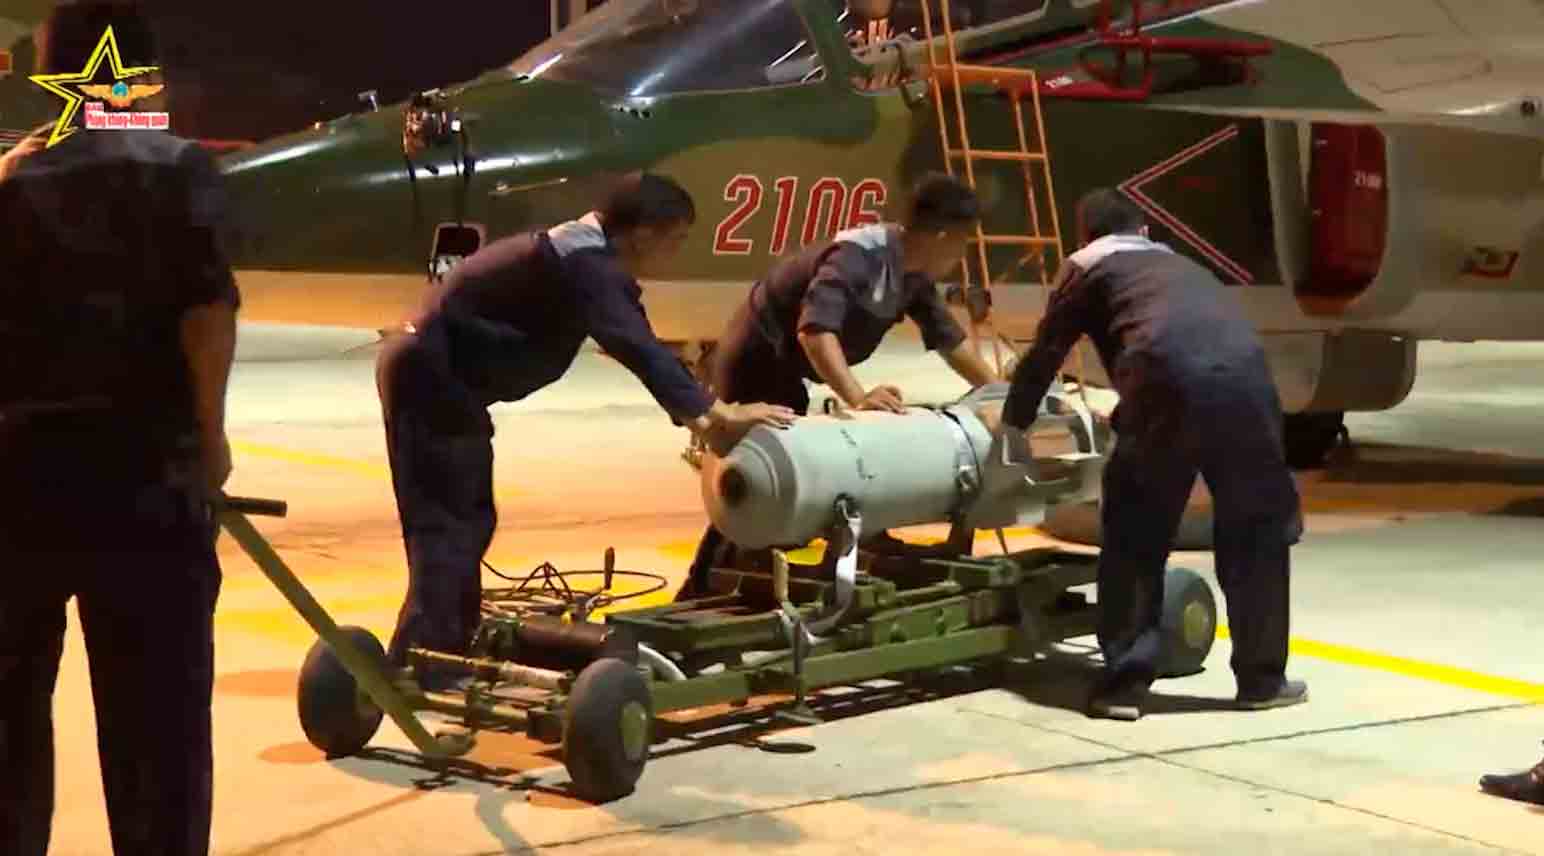 वीडियो: वियतनामी वायु सेना ने याकोवलेव याक-130 विमानों को जमीनी हमले के मिशनों के लिए तैयार किया। फोटो और वीडियो: ट्विटर @AnnQuann से पुनः प्रकाशित